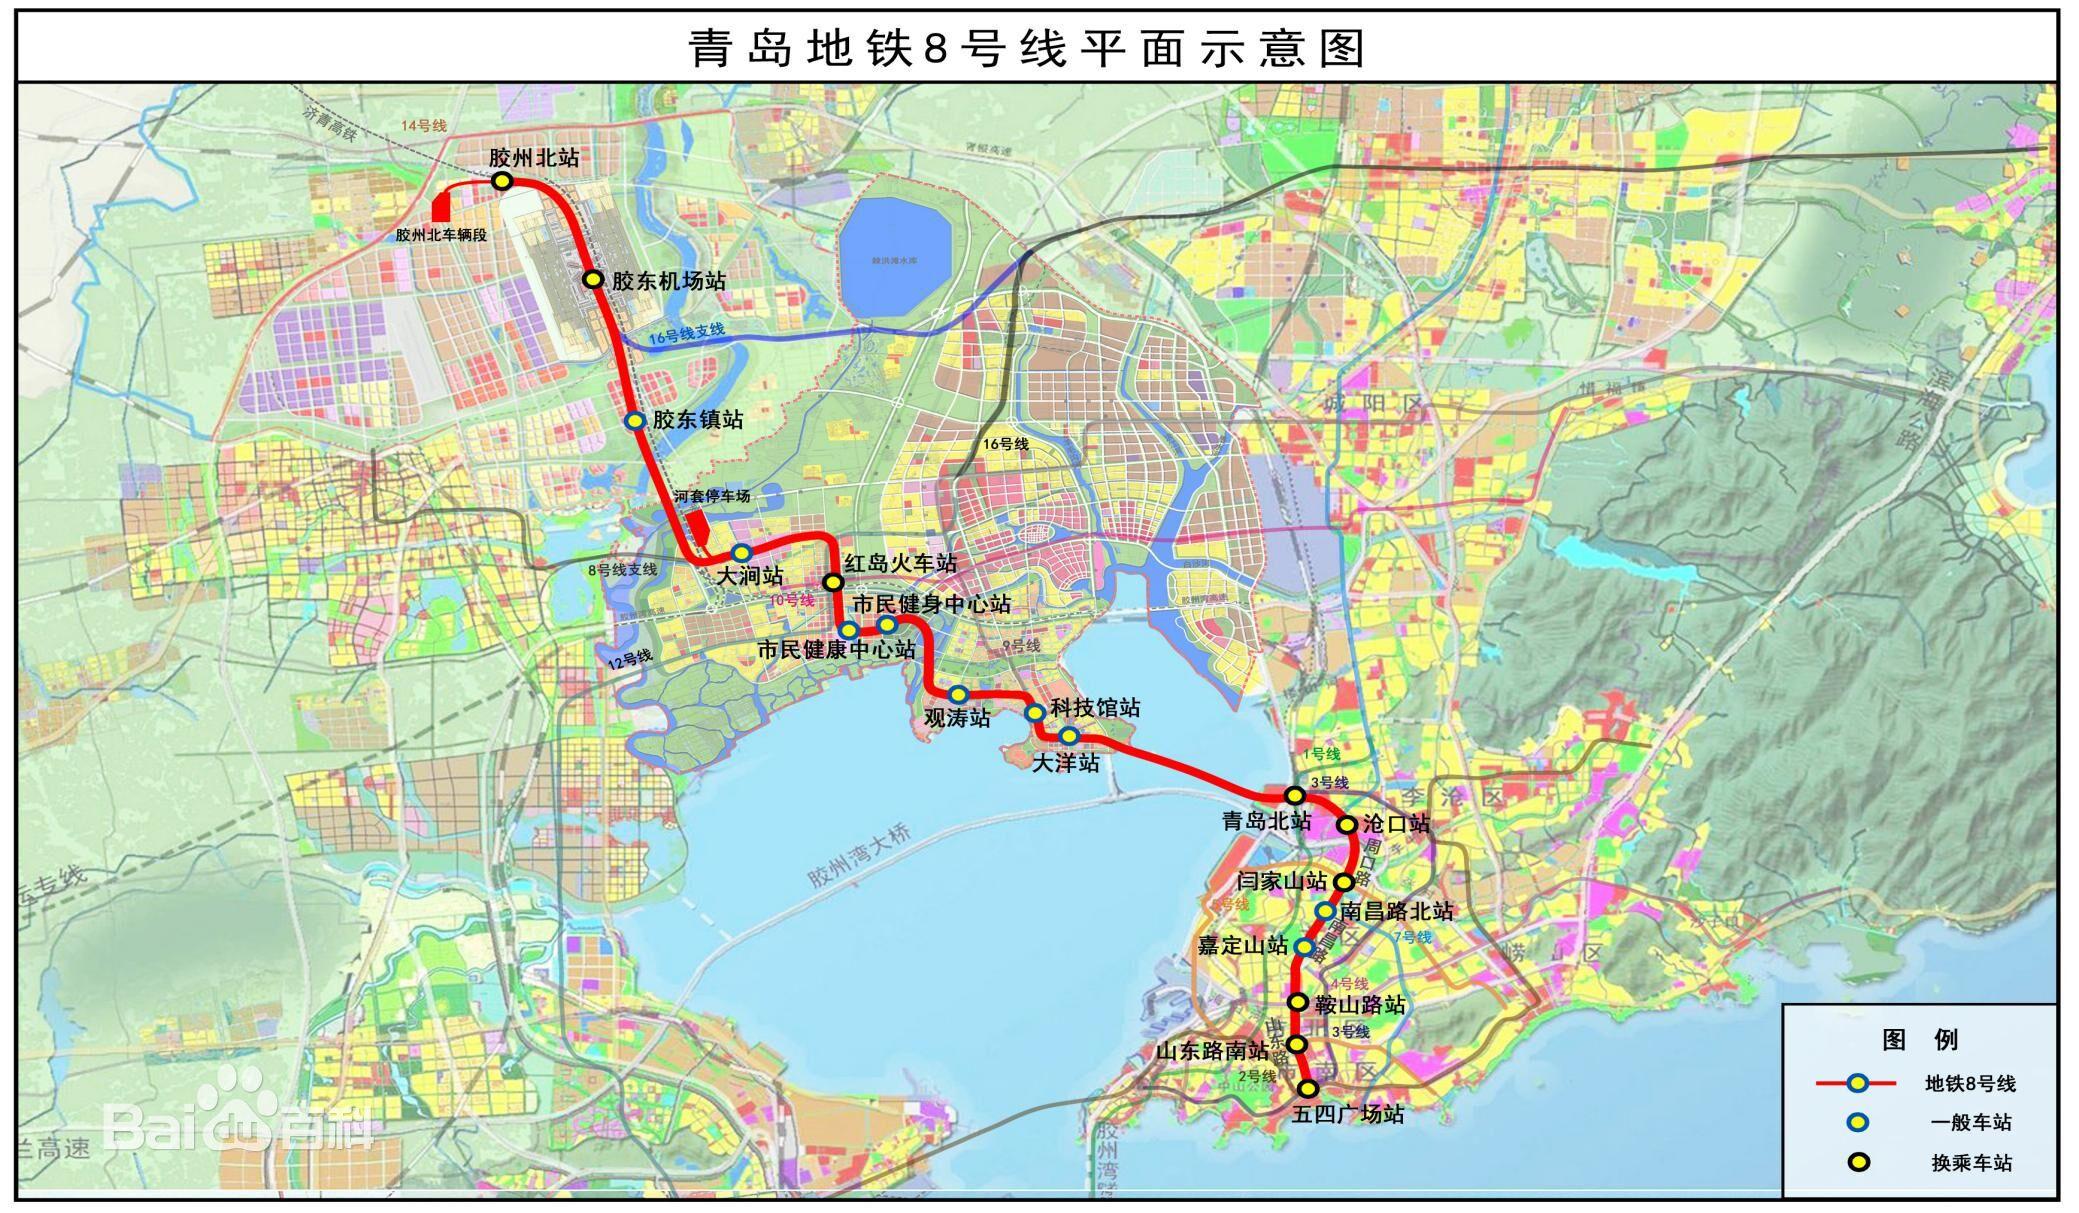 青岛地铁一号线发生坍塌事故 塌方面积约100余平方米_凤凰网